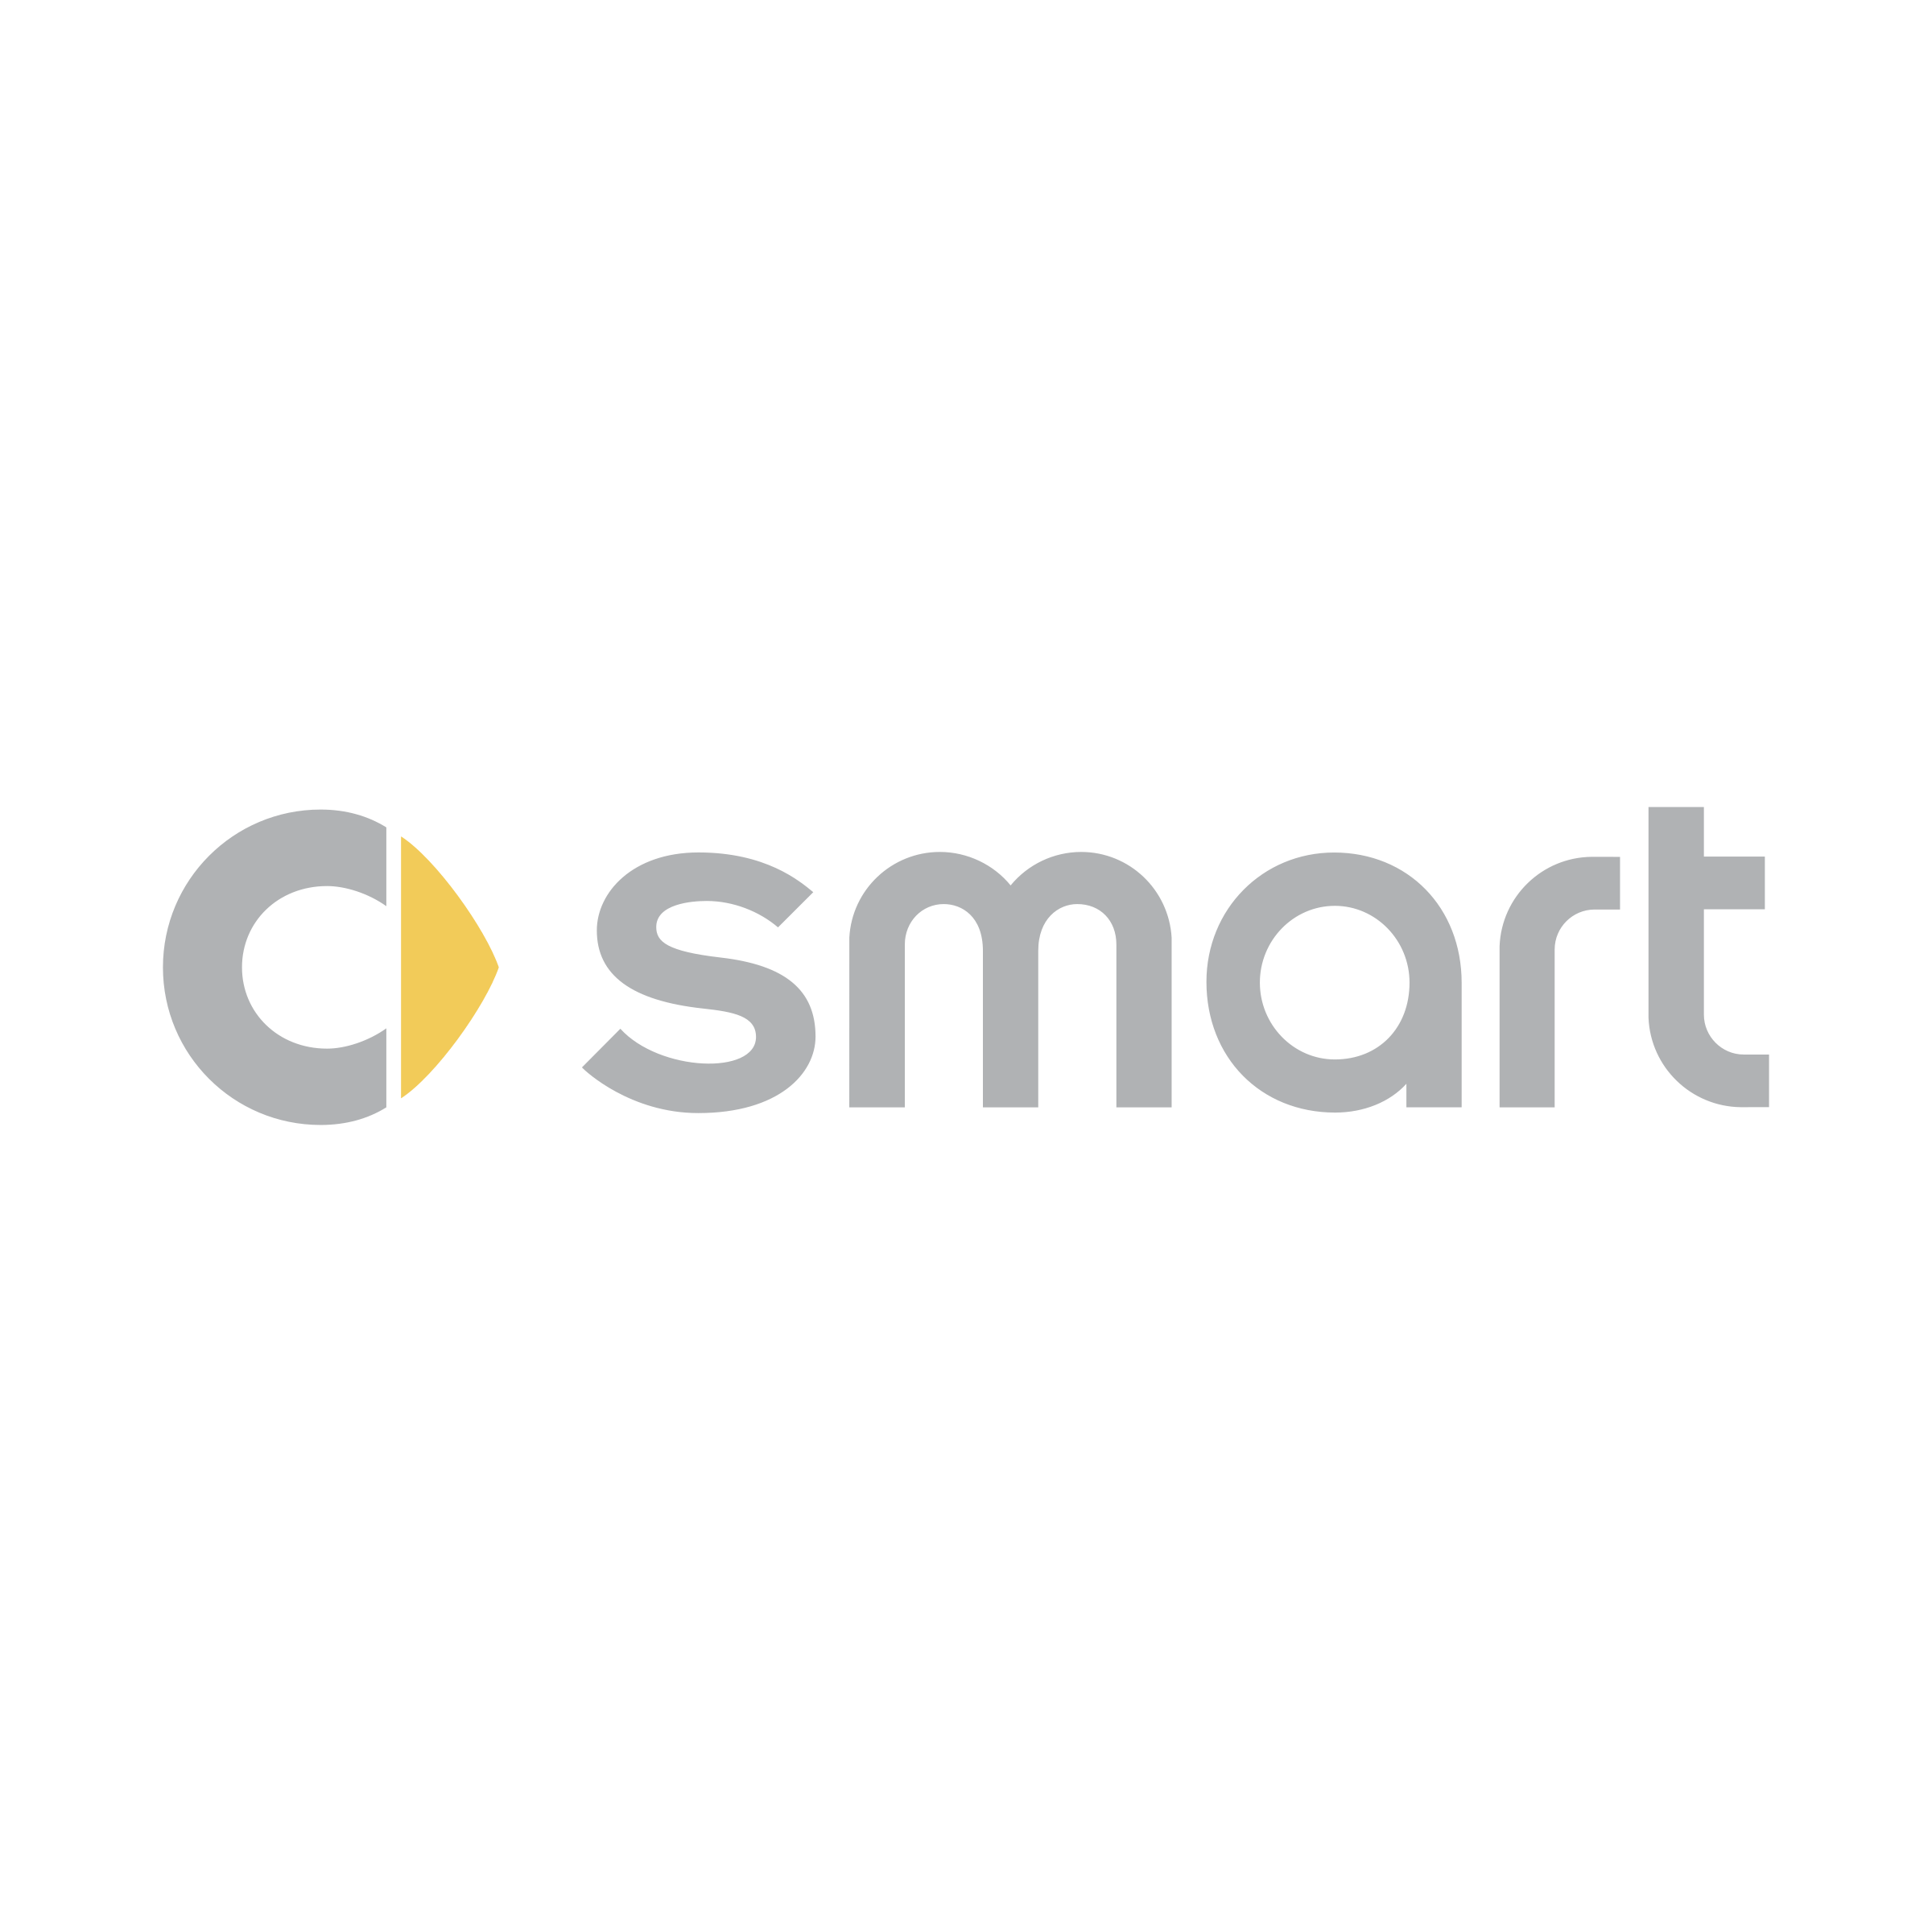 Smart Logo - Smart Logo PNG Transparent & SVG Vector - Freebie Supply